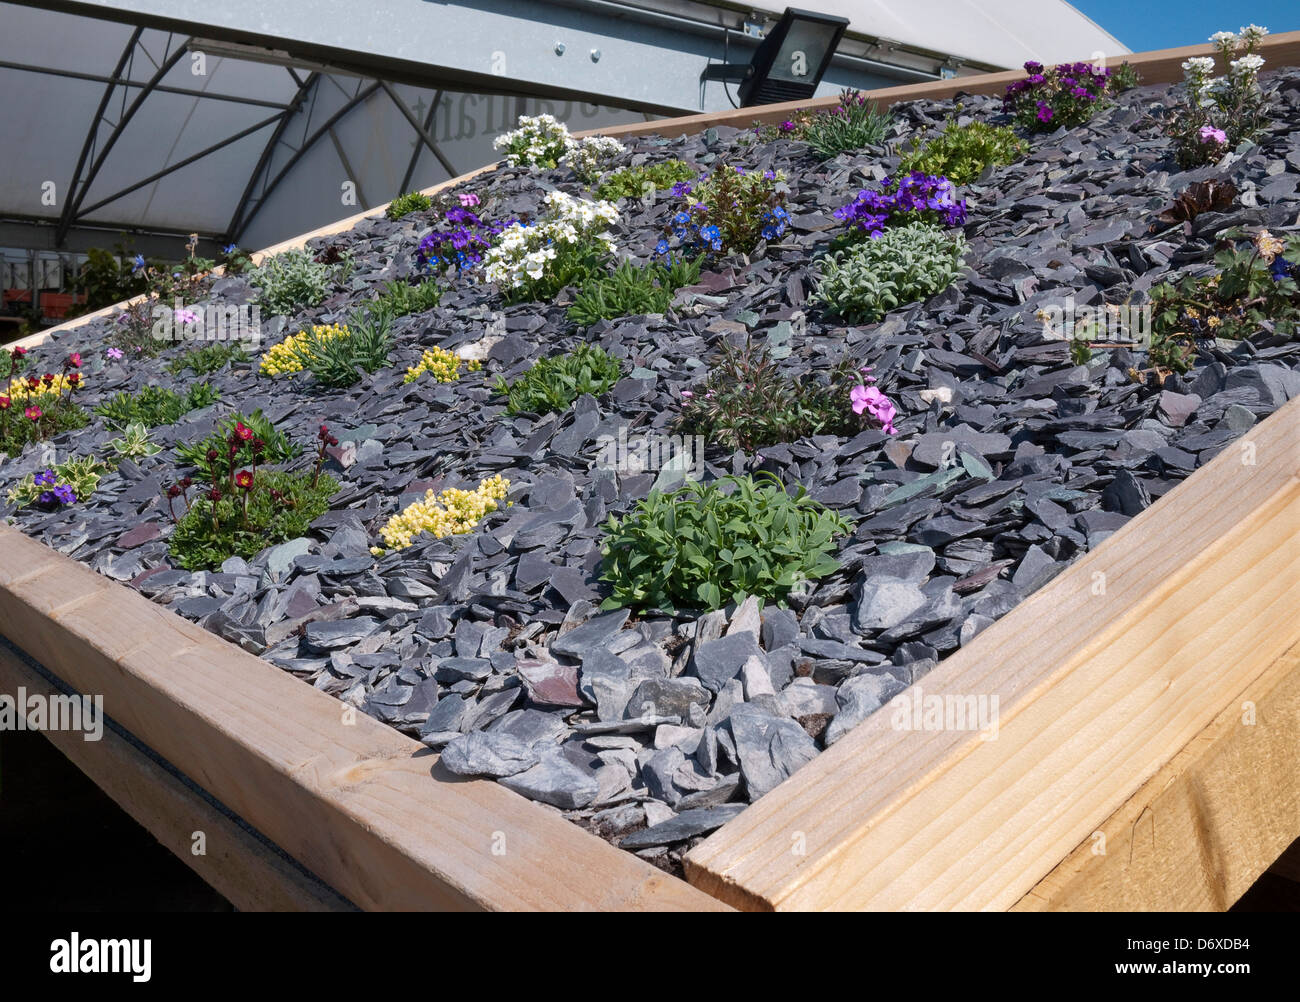 Schiefer Kies und alpine Pflanzen auf Gartenhaus Dach, Norfolk, England Stockfoto